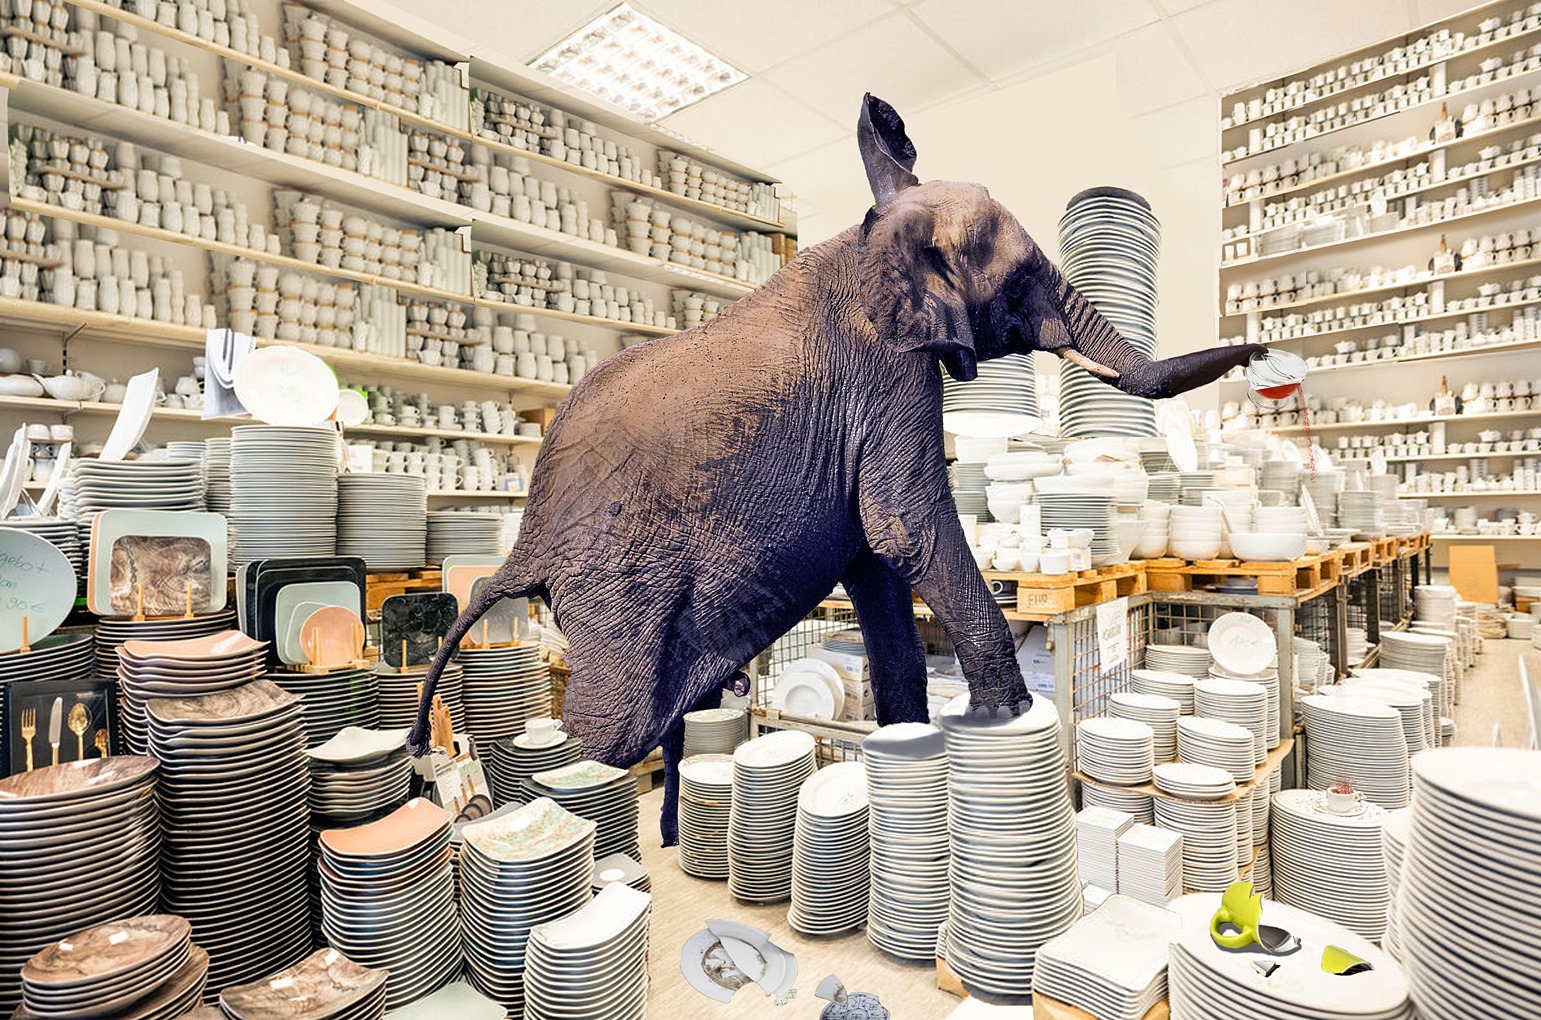 Der Elefant im Porzellanladen